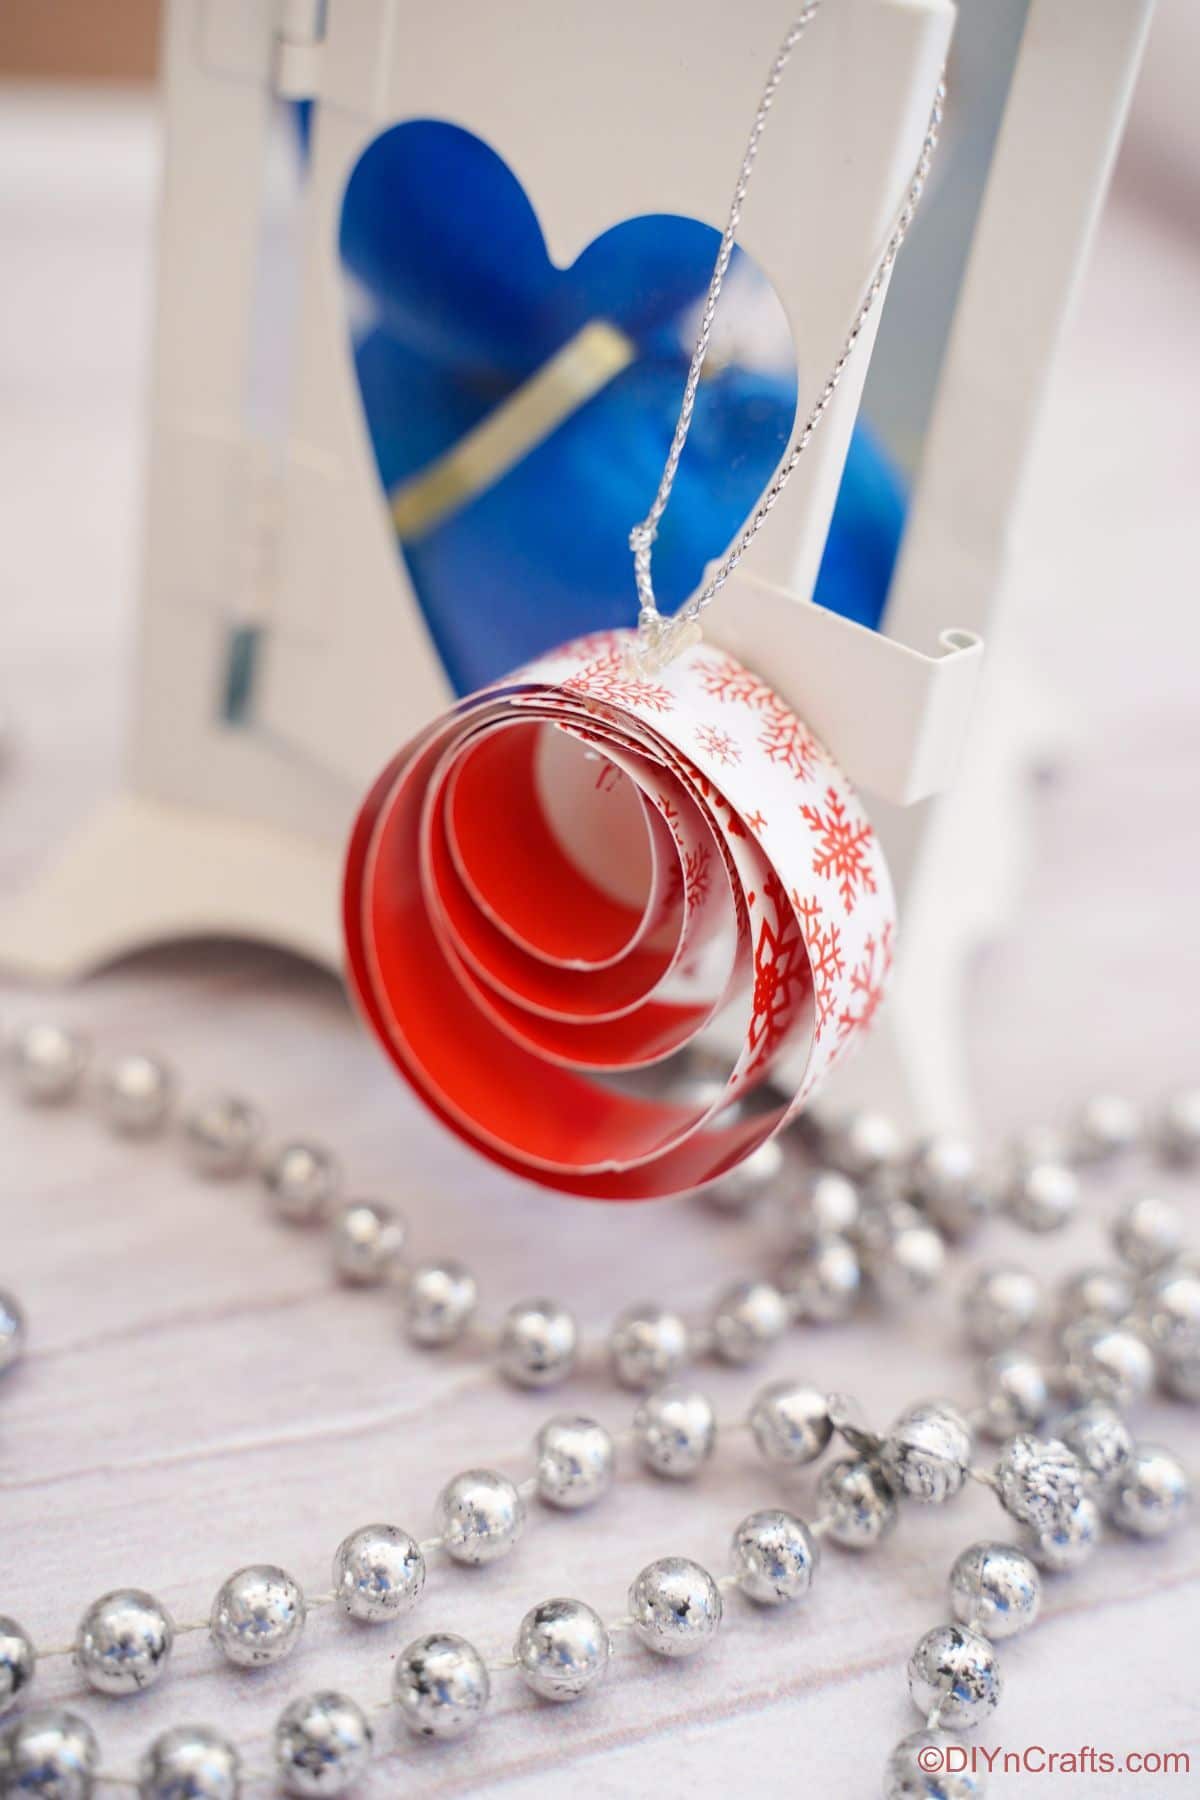 rdeče-bel okrogel papirnati okras na beli mizi z modrim ornamentom